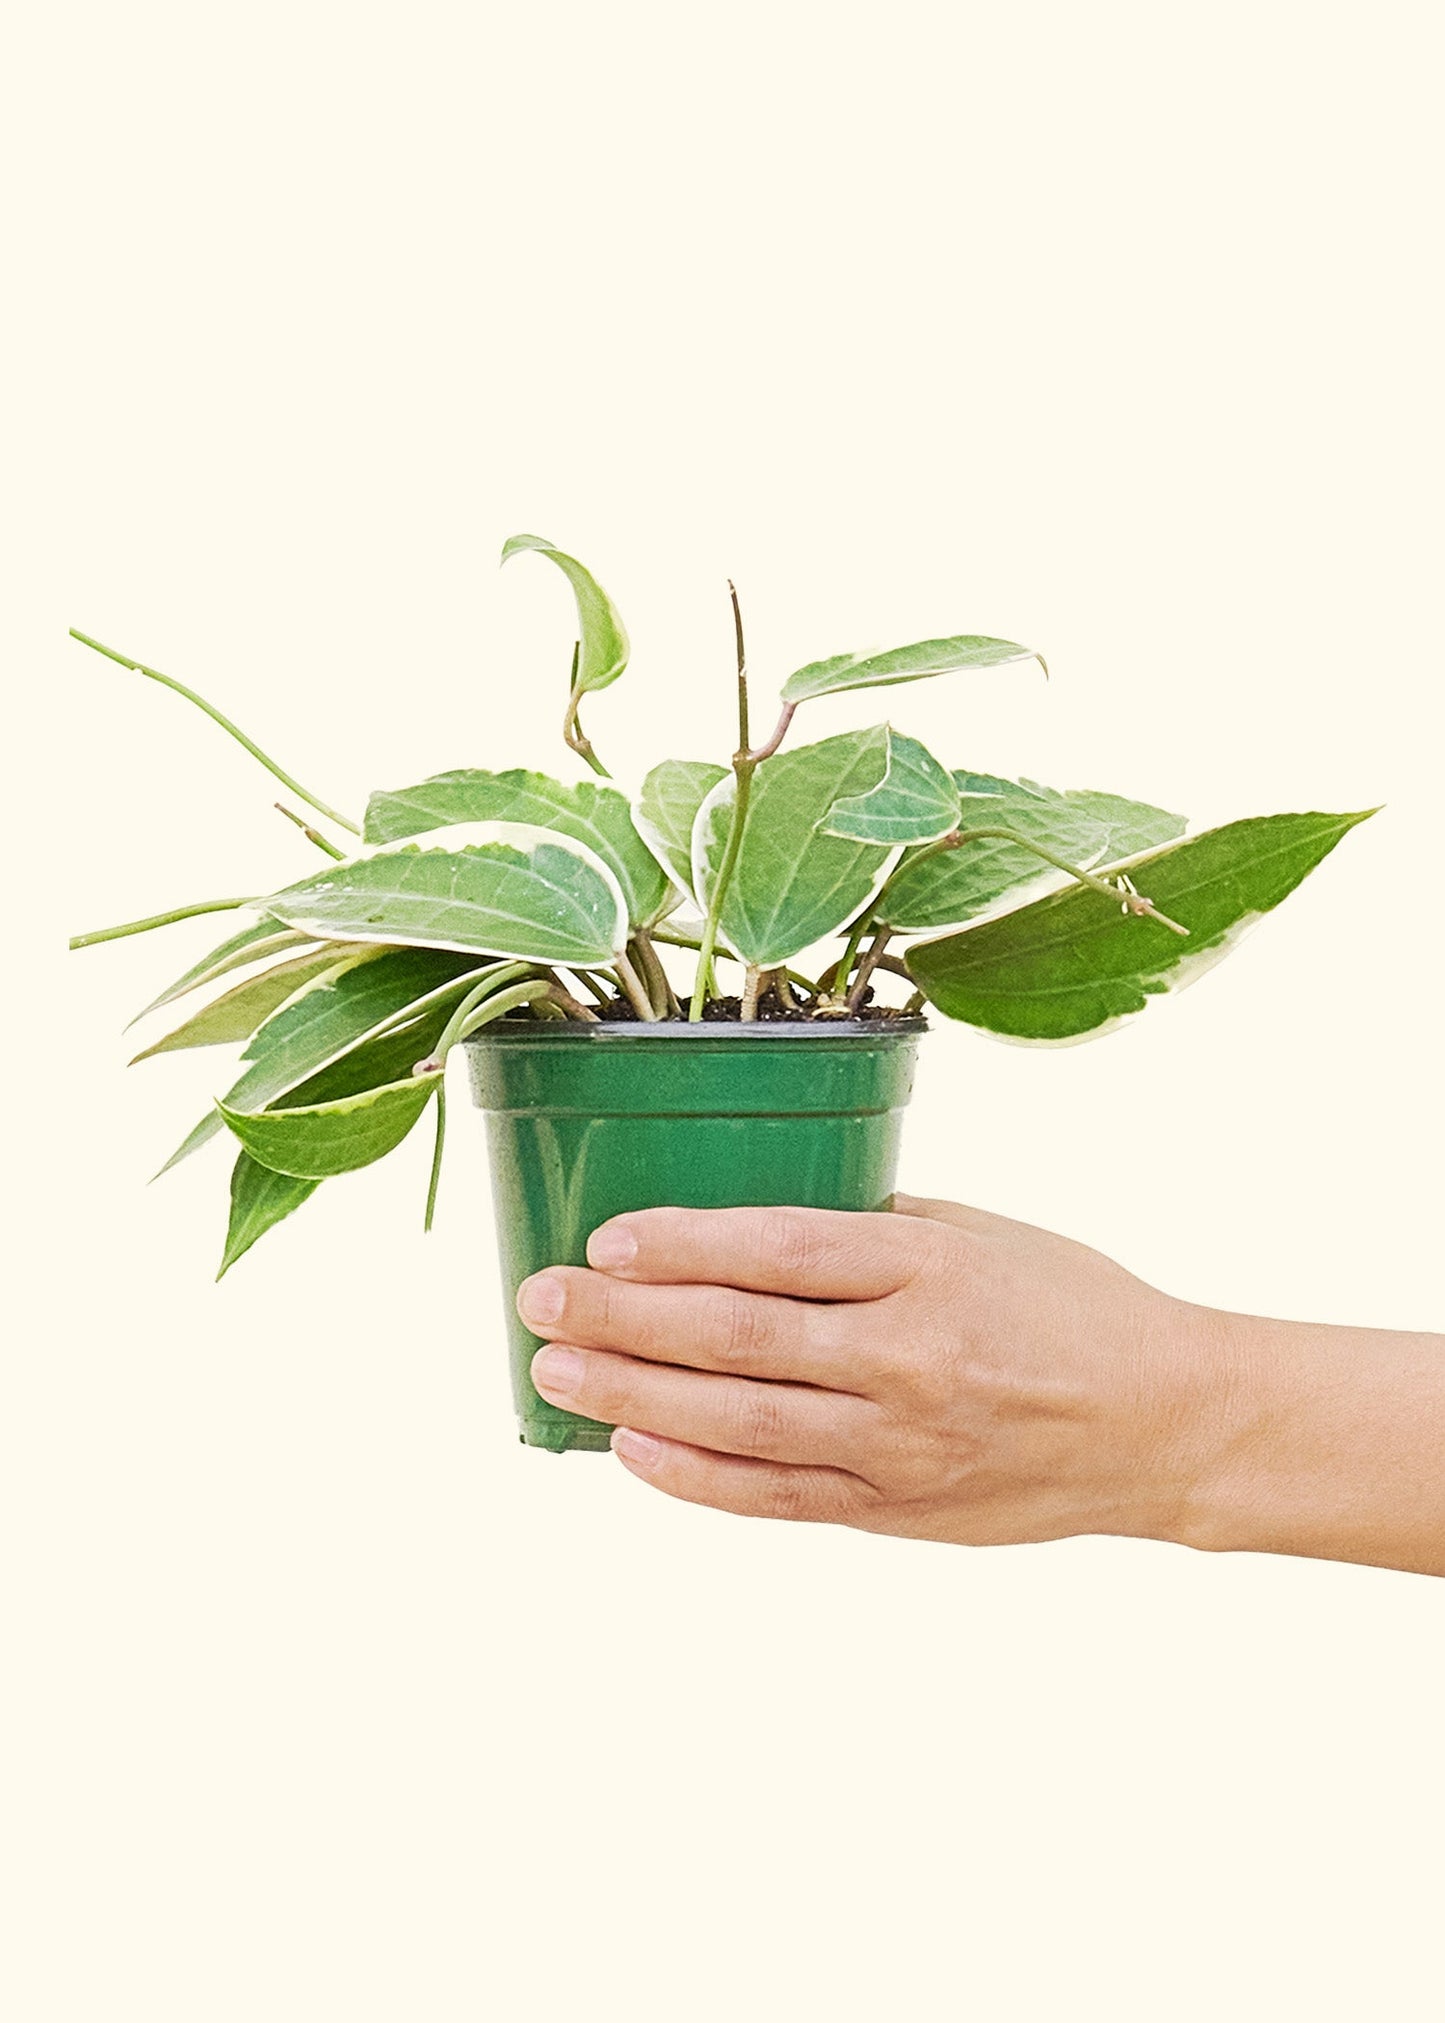 Medium Hoya 'Macrophylla' (Hoya 'Macrophylla') in grow pot